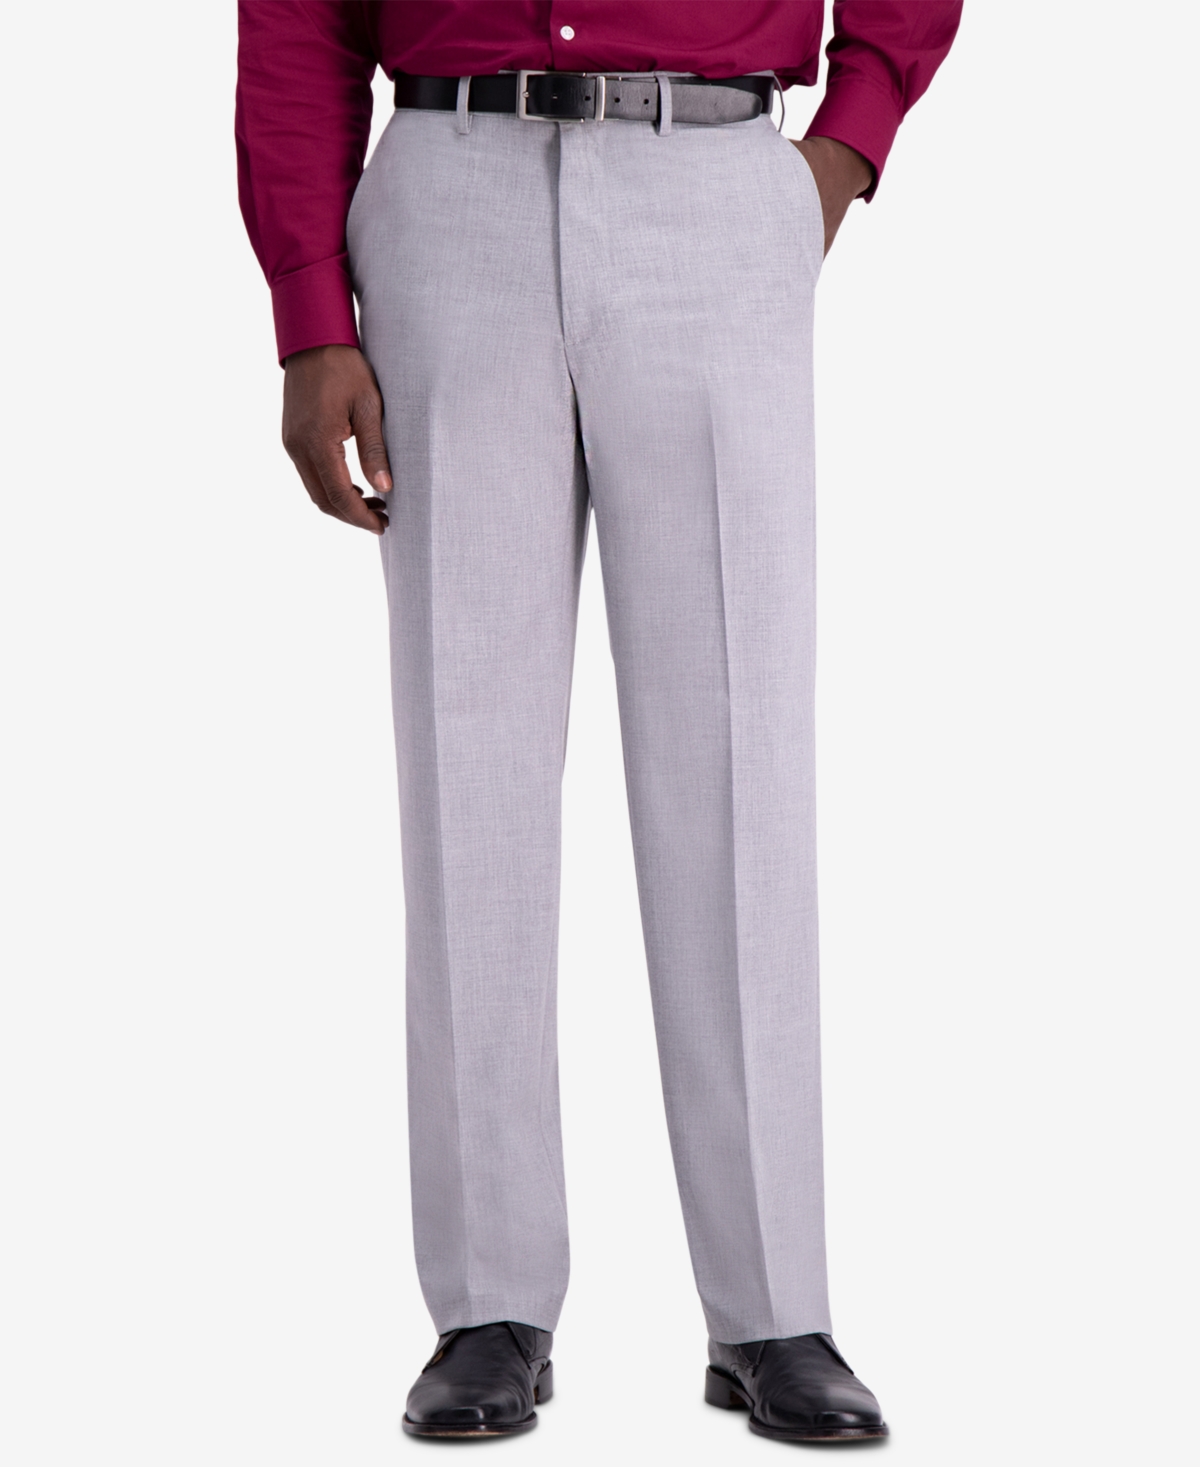 Haggar J.m. Haggar Men's Premium Classic-Fit 4-Way Stretch Dress Pants